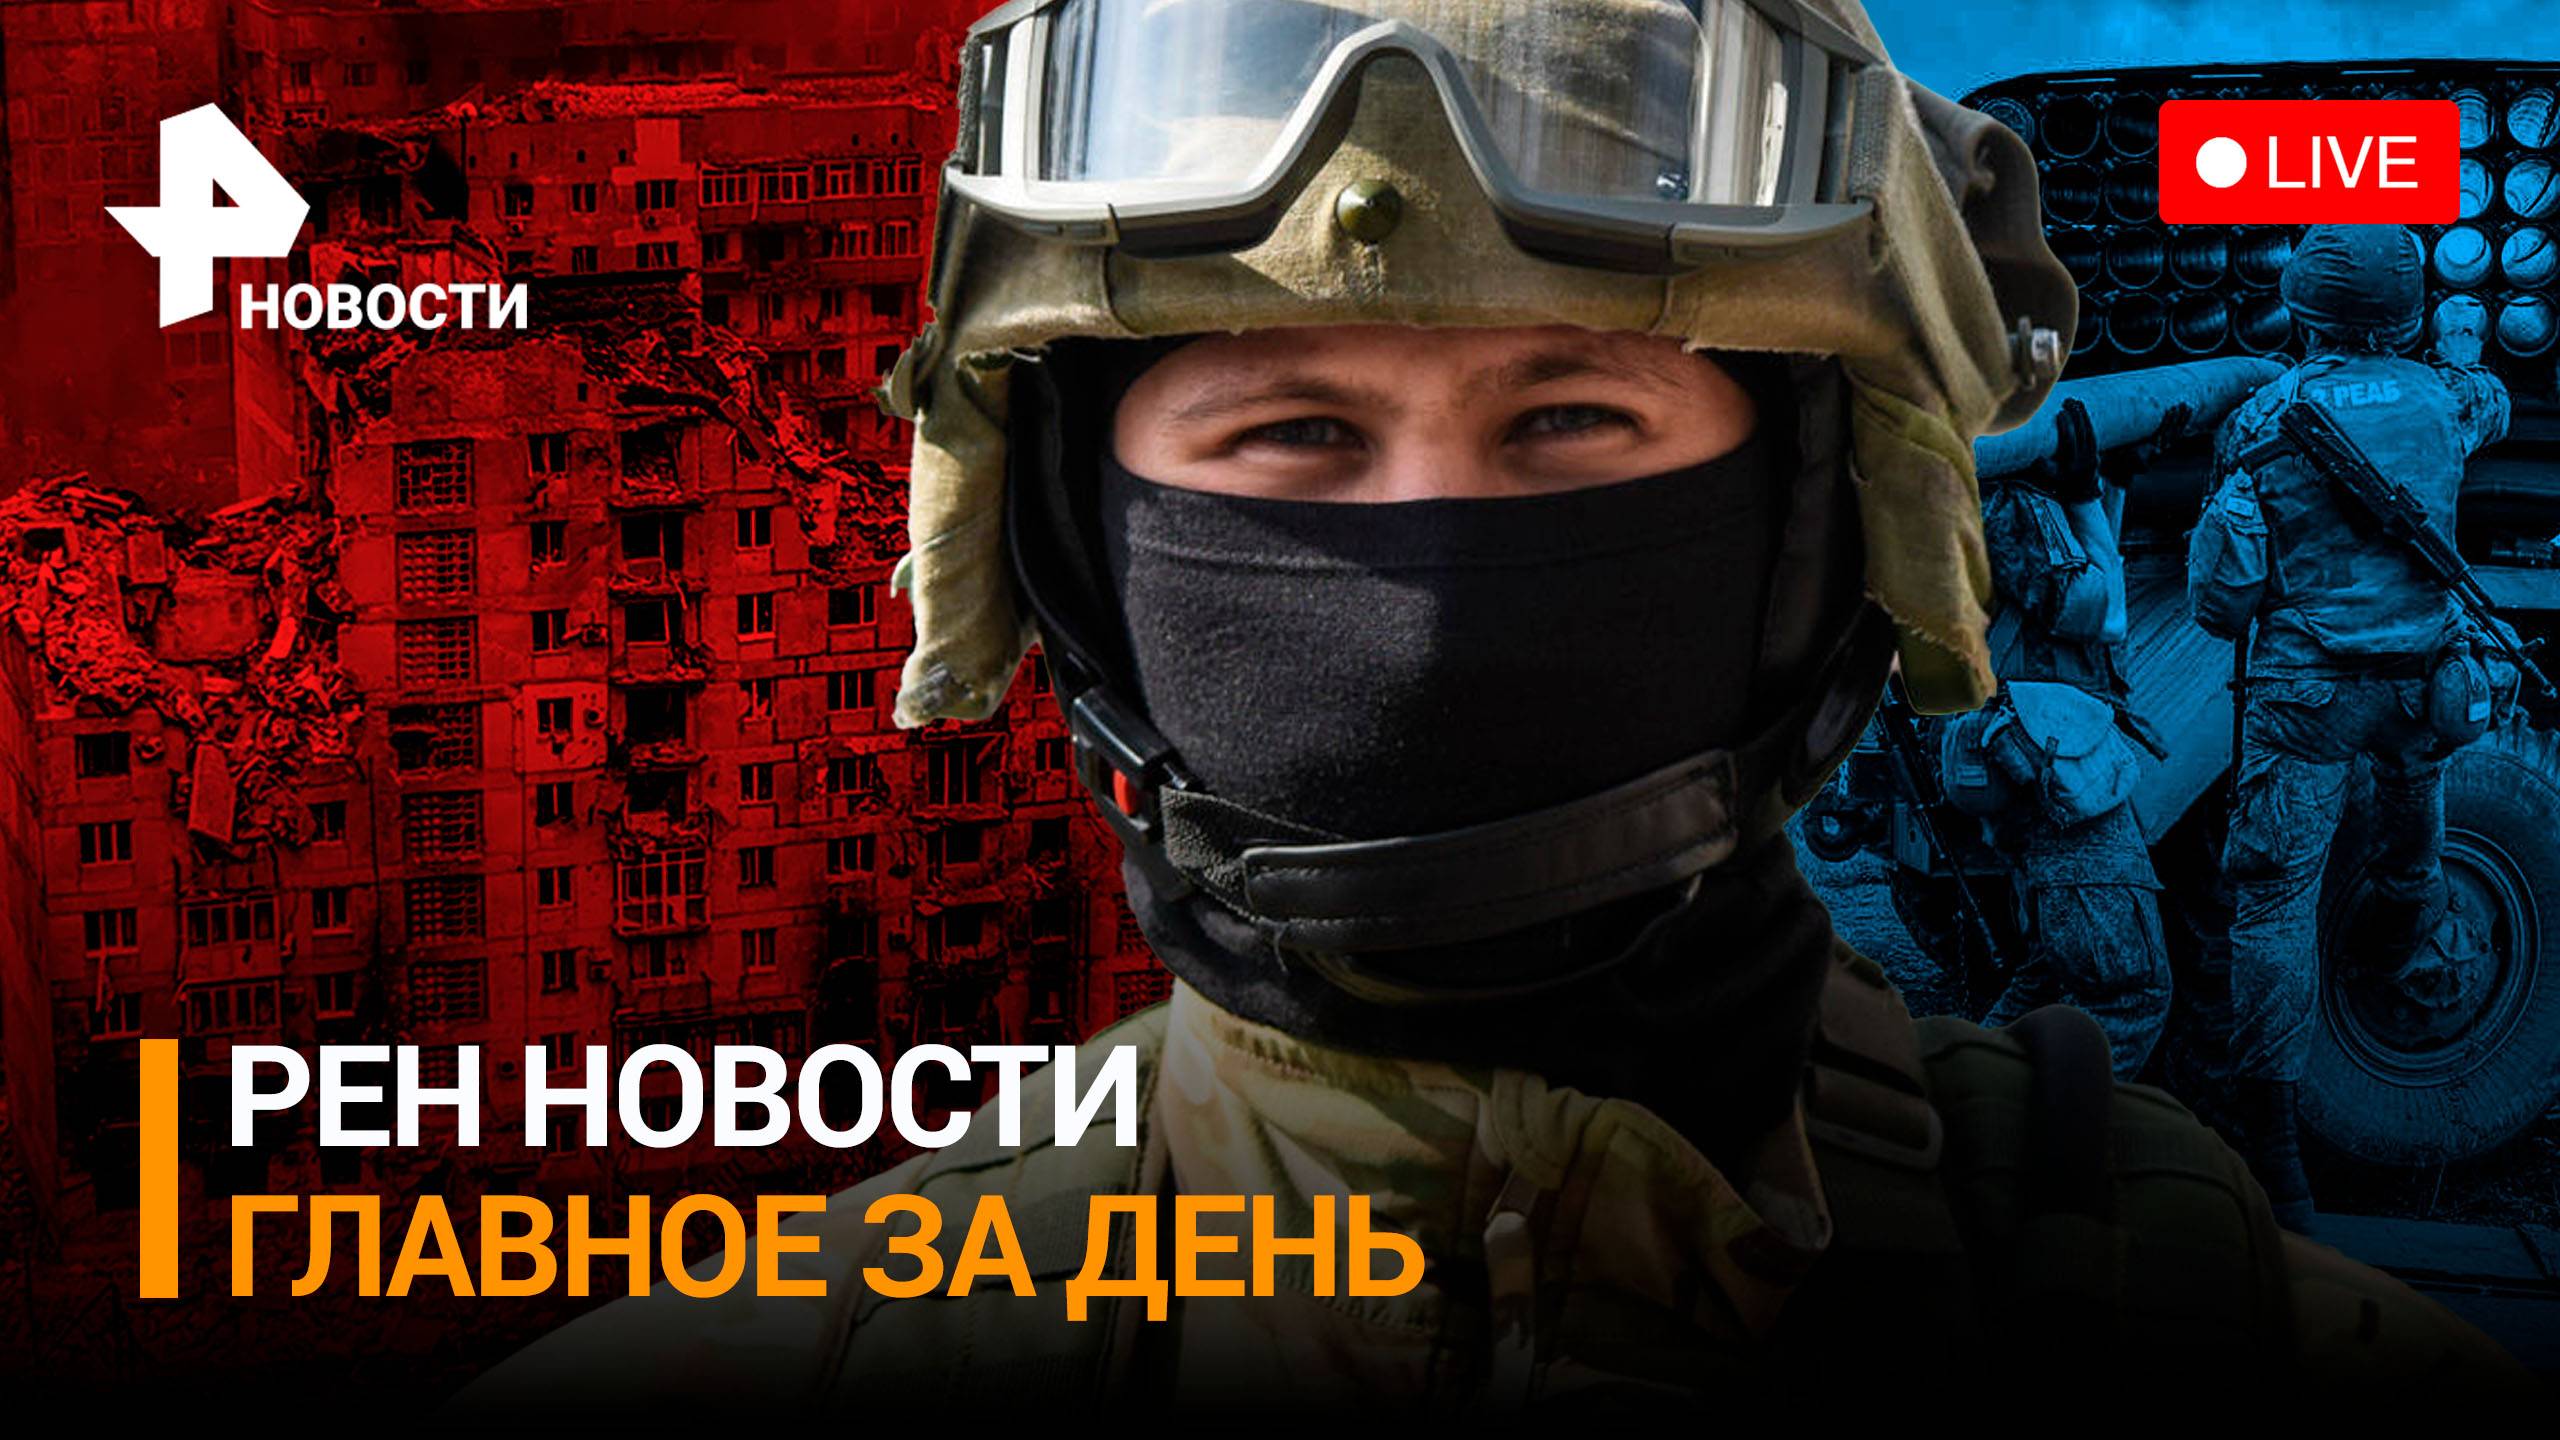 Разбит Центр применения дронов украинской армии: БПЛА ВСУ взрываются / РЕН НОВОСТИ 19:30, 28.11